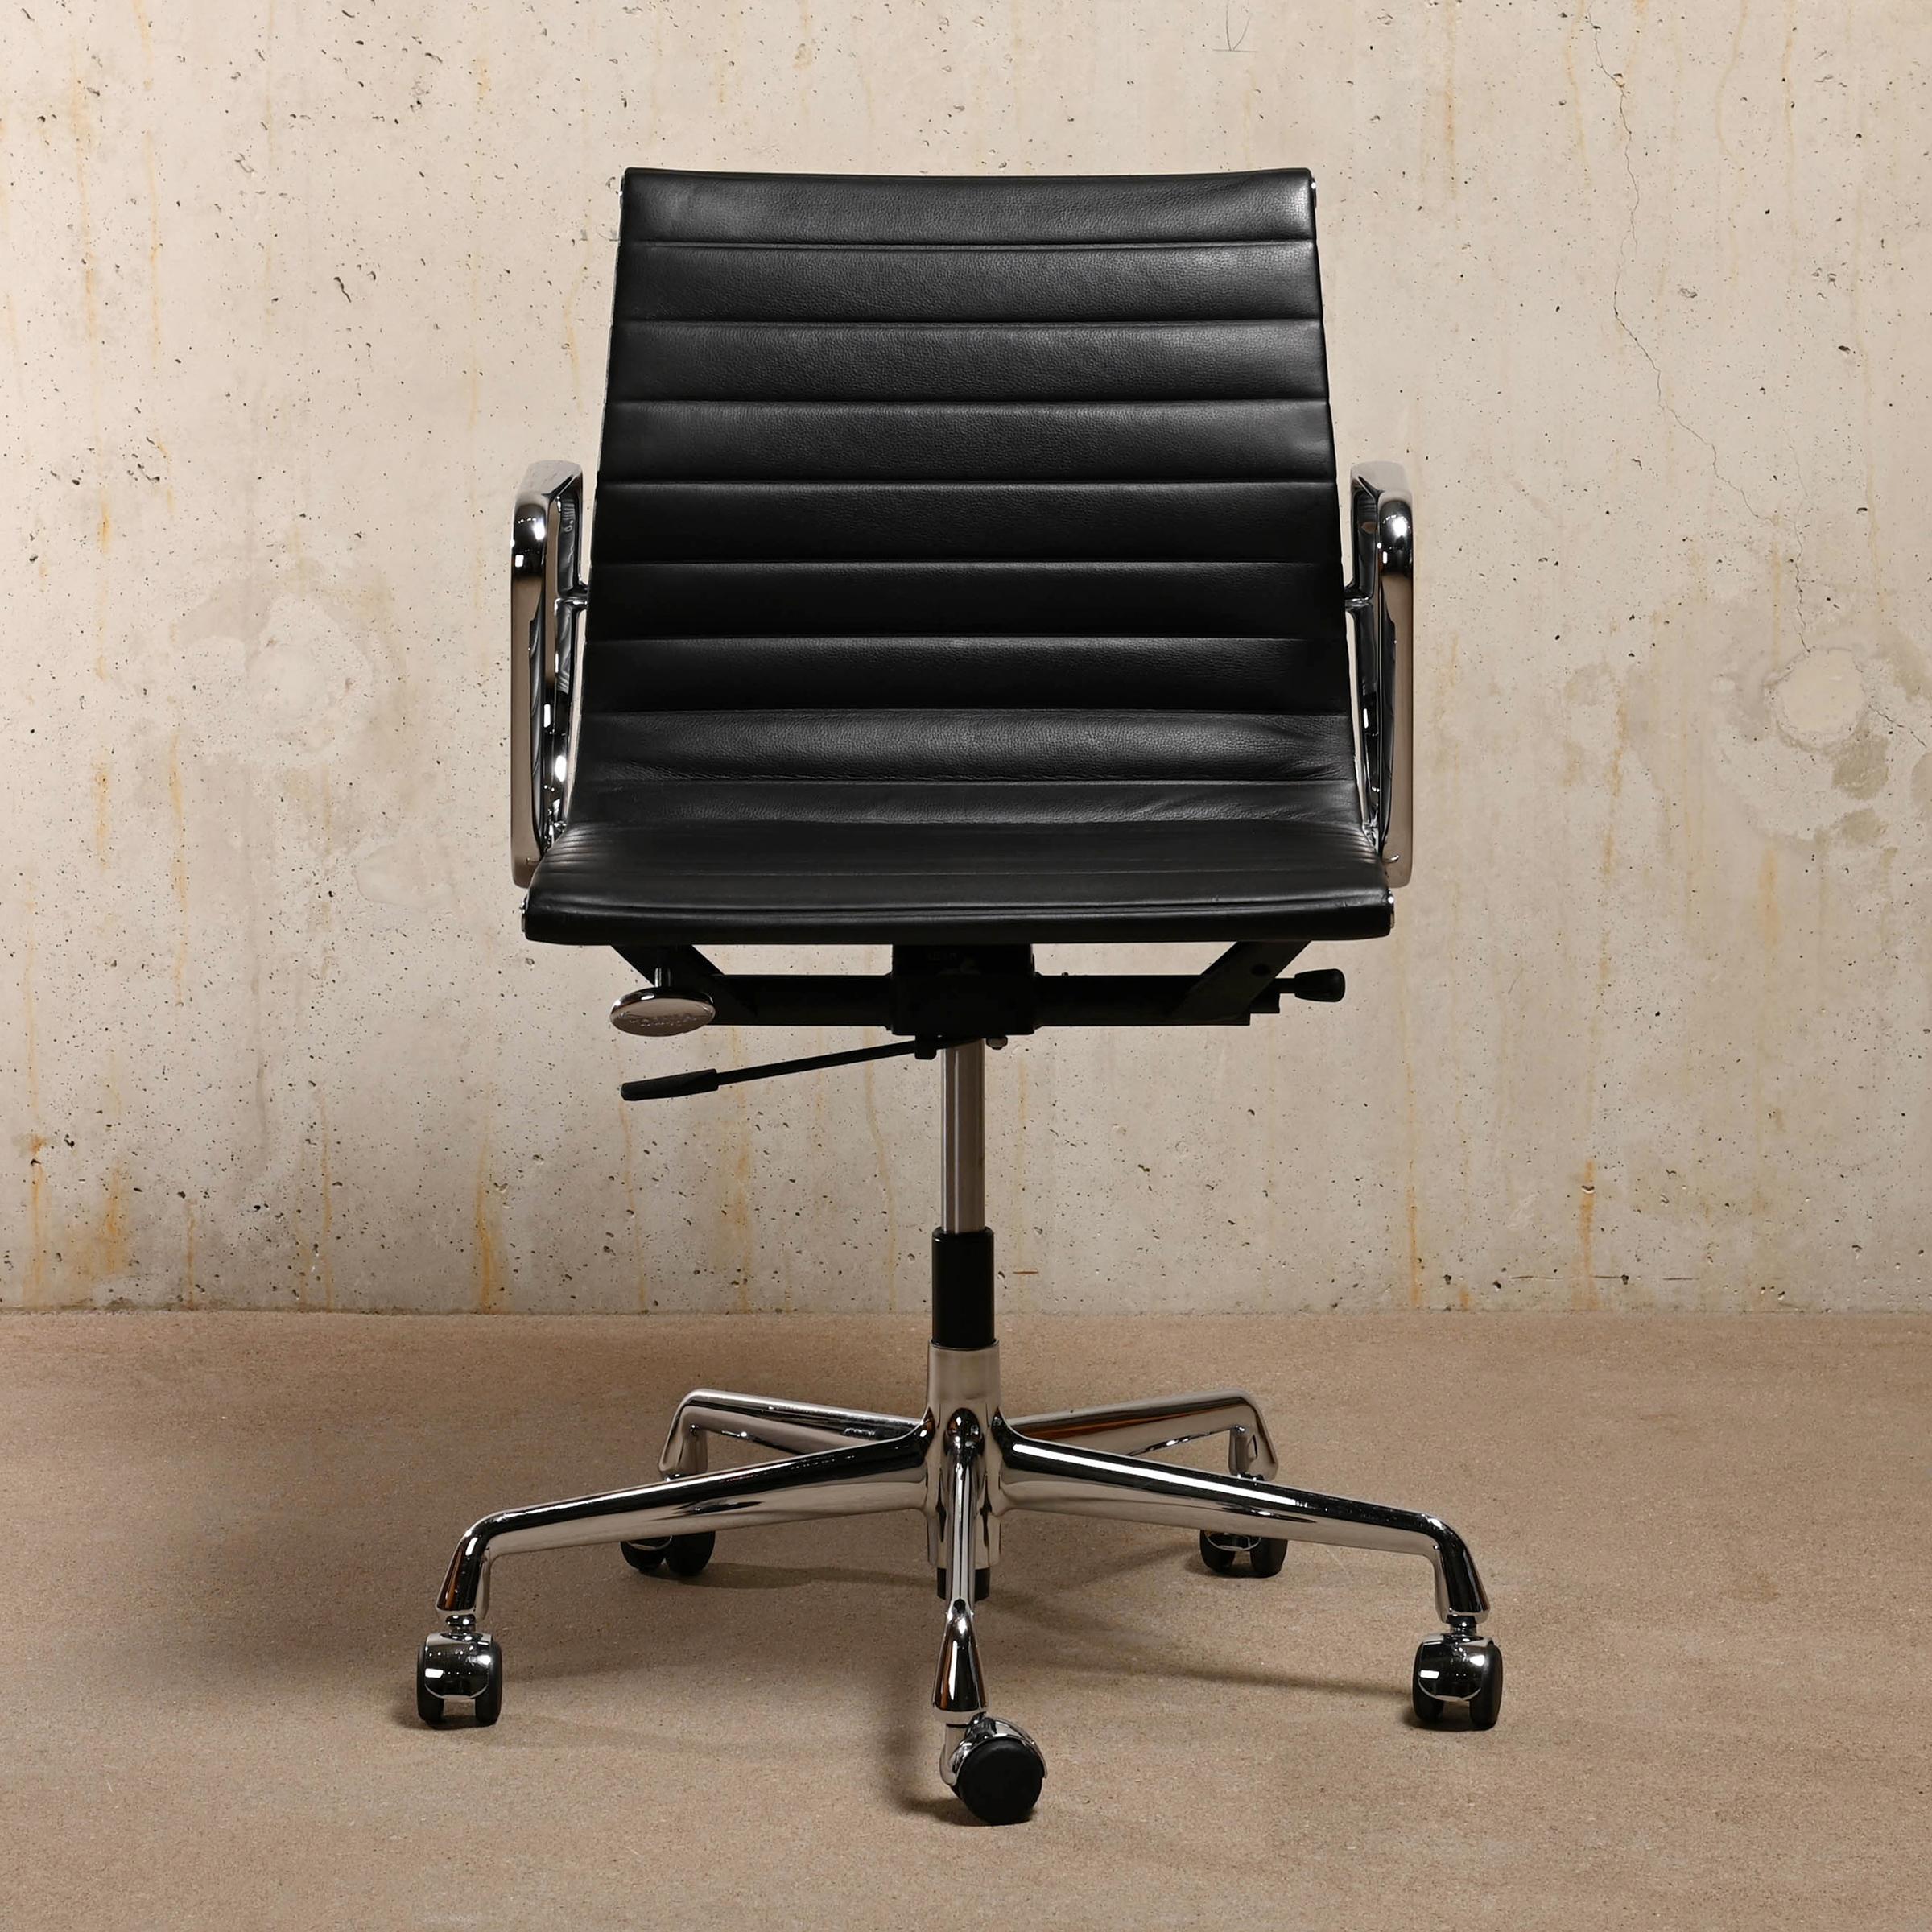 Der ikonische Bürostuhl EA117 gehört zur berühmten Aluminium-Serie, die von Charles & Ray Eames für Herman Miller (US) / Vitra (EU) entworfen wurde. Die Höhenverstellung und der Kipp-/Schwenkmechanismus, der auf das Gewicht des Benutzers eingestellt